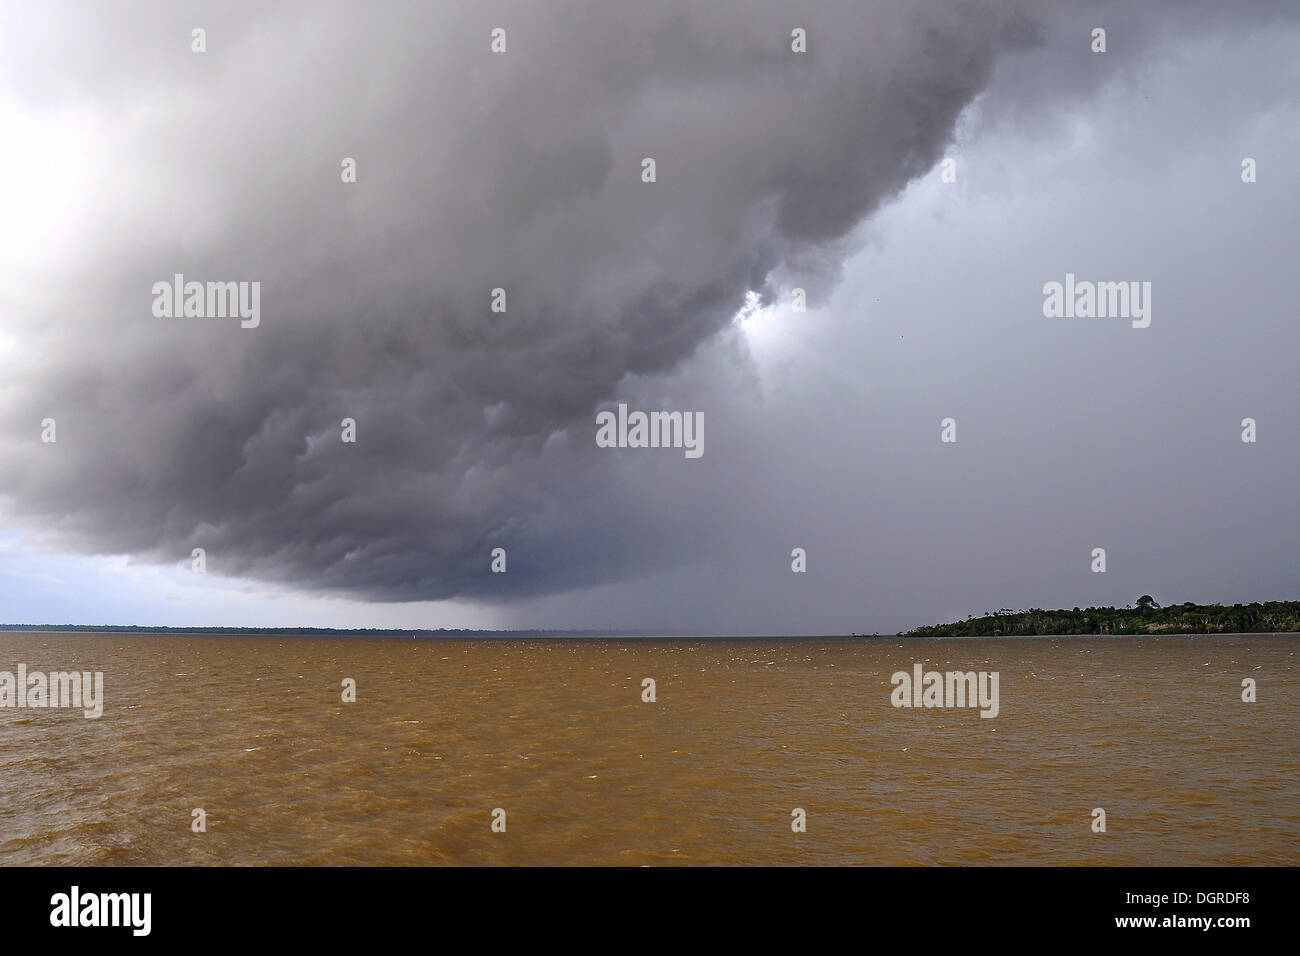 Nuage menaçant annonçant avant une tempête tropicale, l'amazone entre Manaus et Santarém, province Amazonas, Brésil Banque D'Images